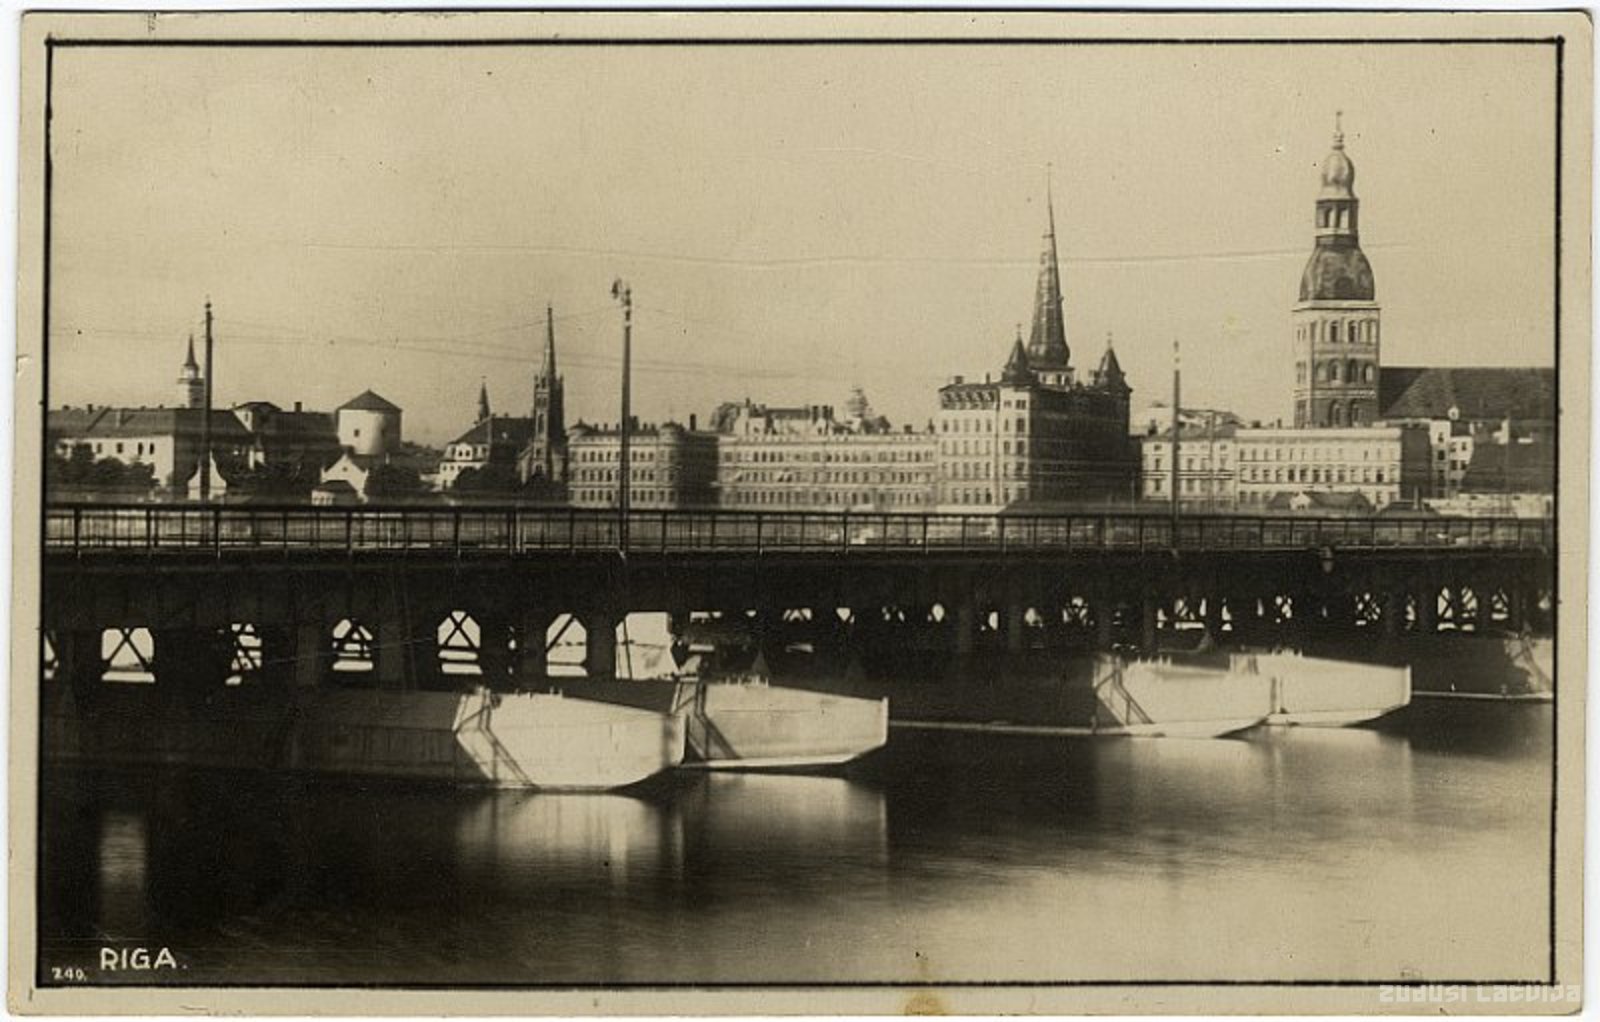 Riga. Ponton bridge